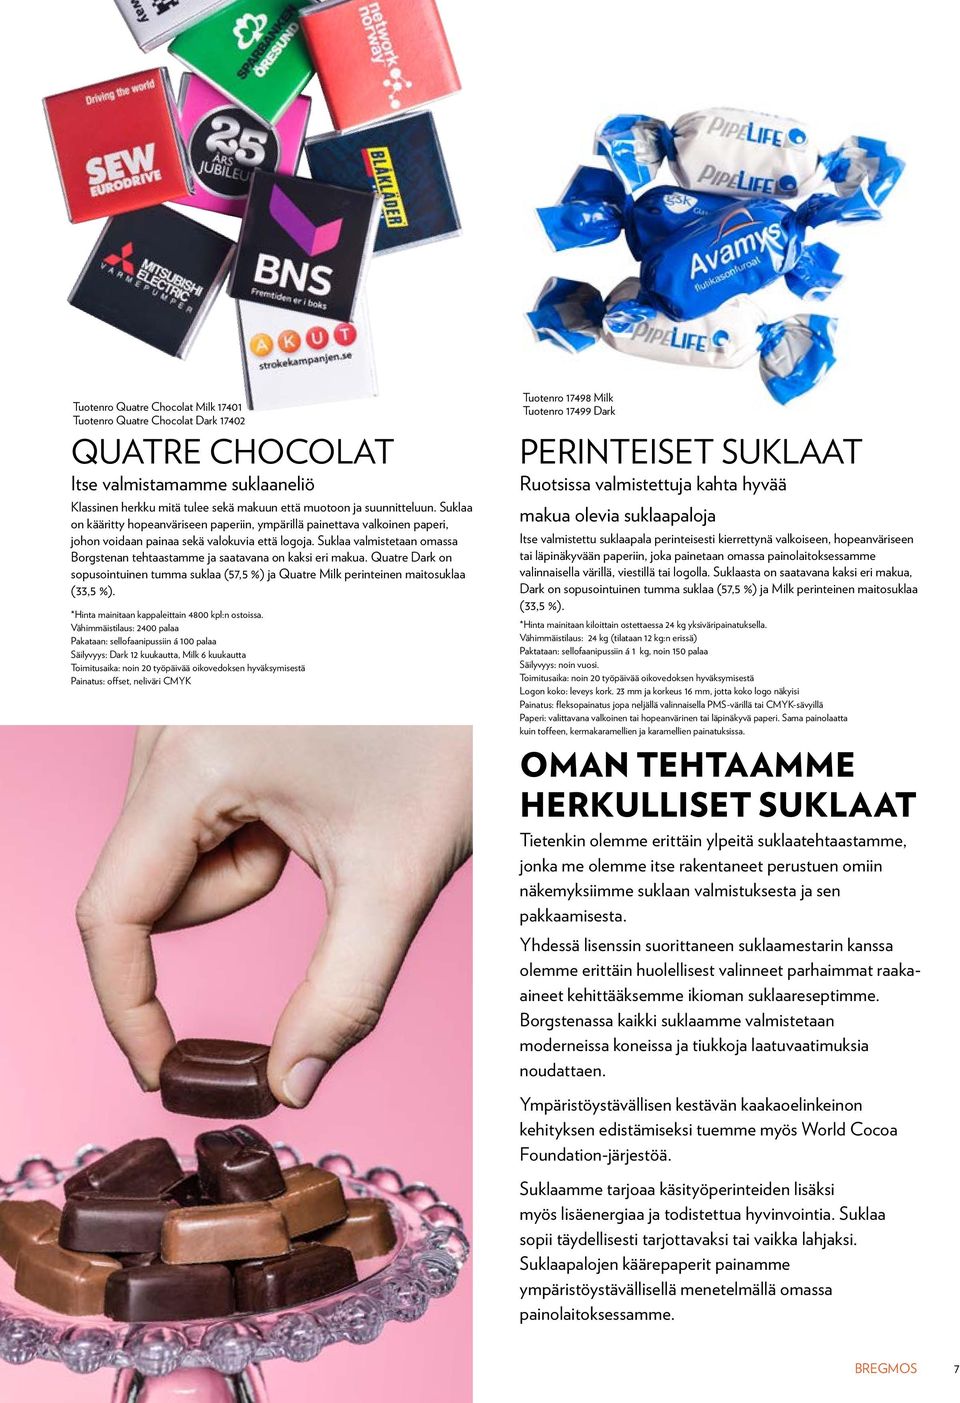 Suklaa valmistetaan omassa Borgstenan tehtaastamme ja saatavana on kaksi eri makua. Quatre Dark on sopusointuinen tumma suklaa (57,5 %) ja Quatre Milk perinteinen maitosuklaa (33,5 %).